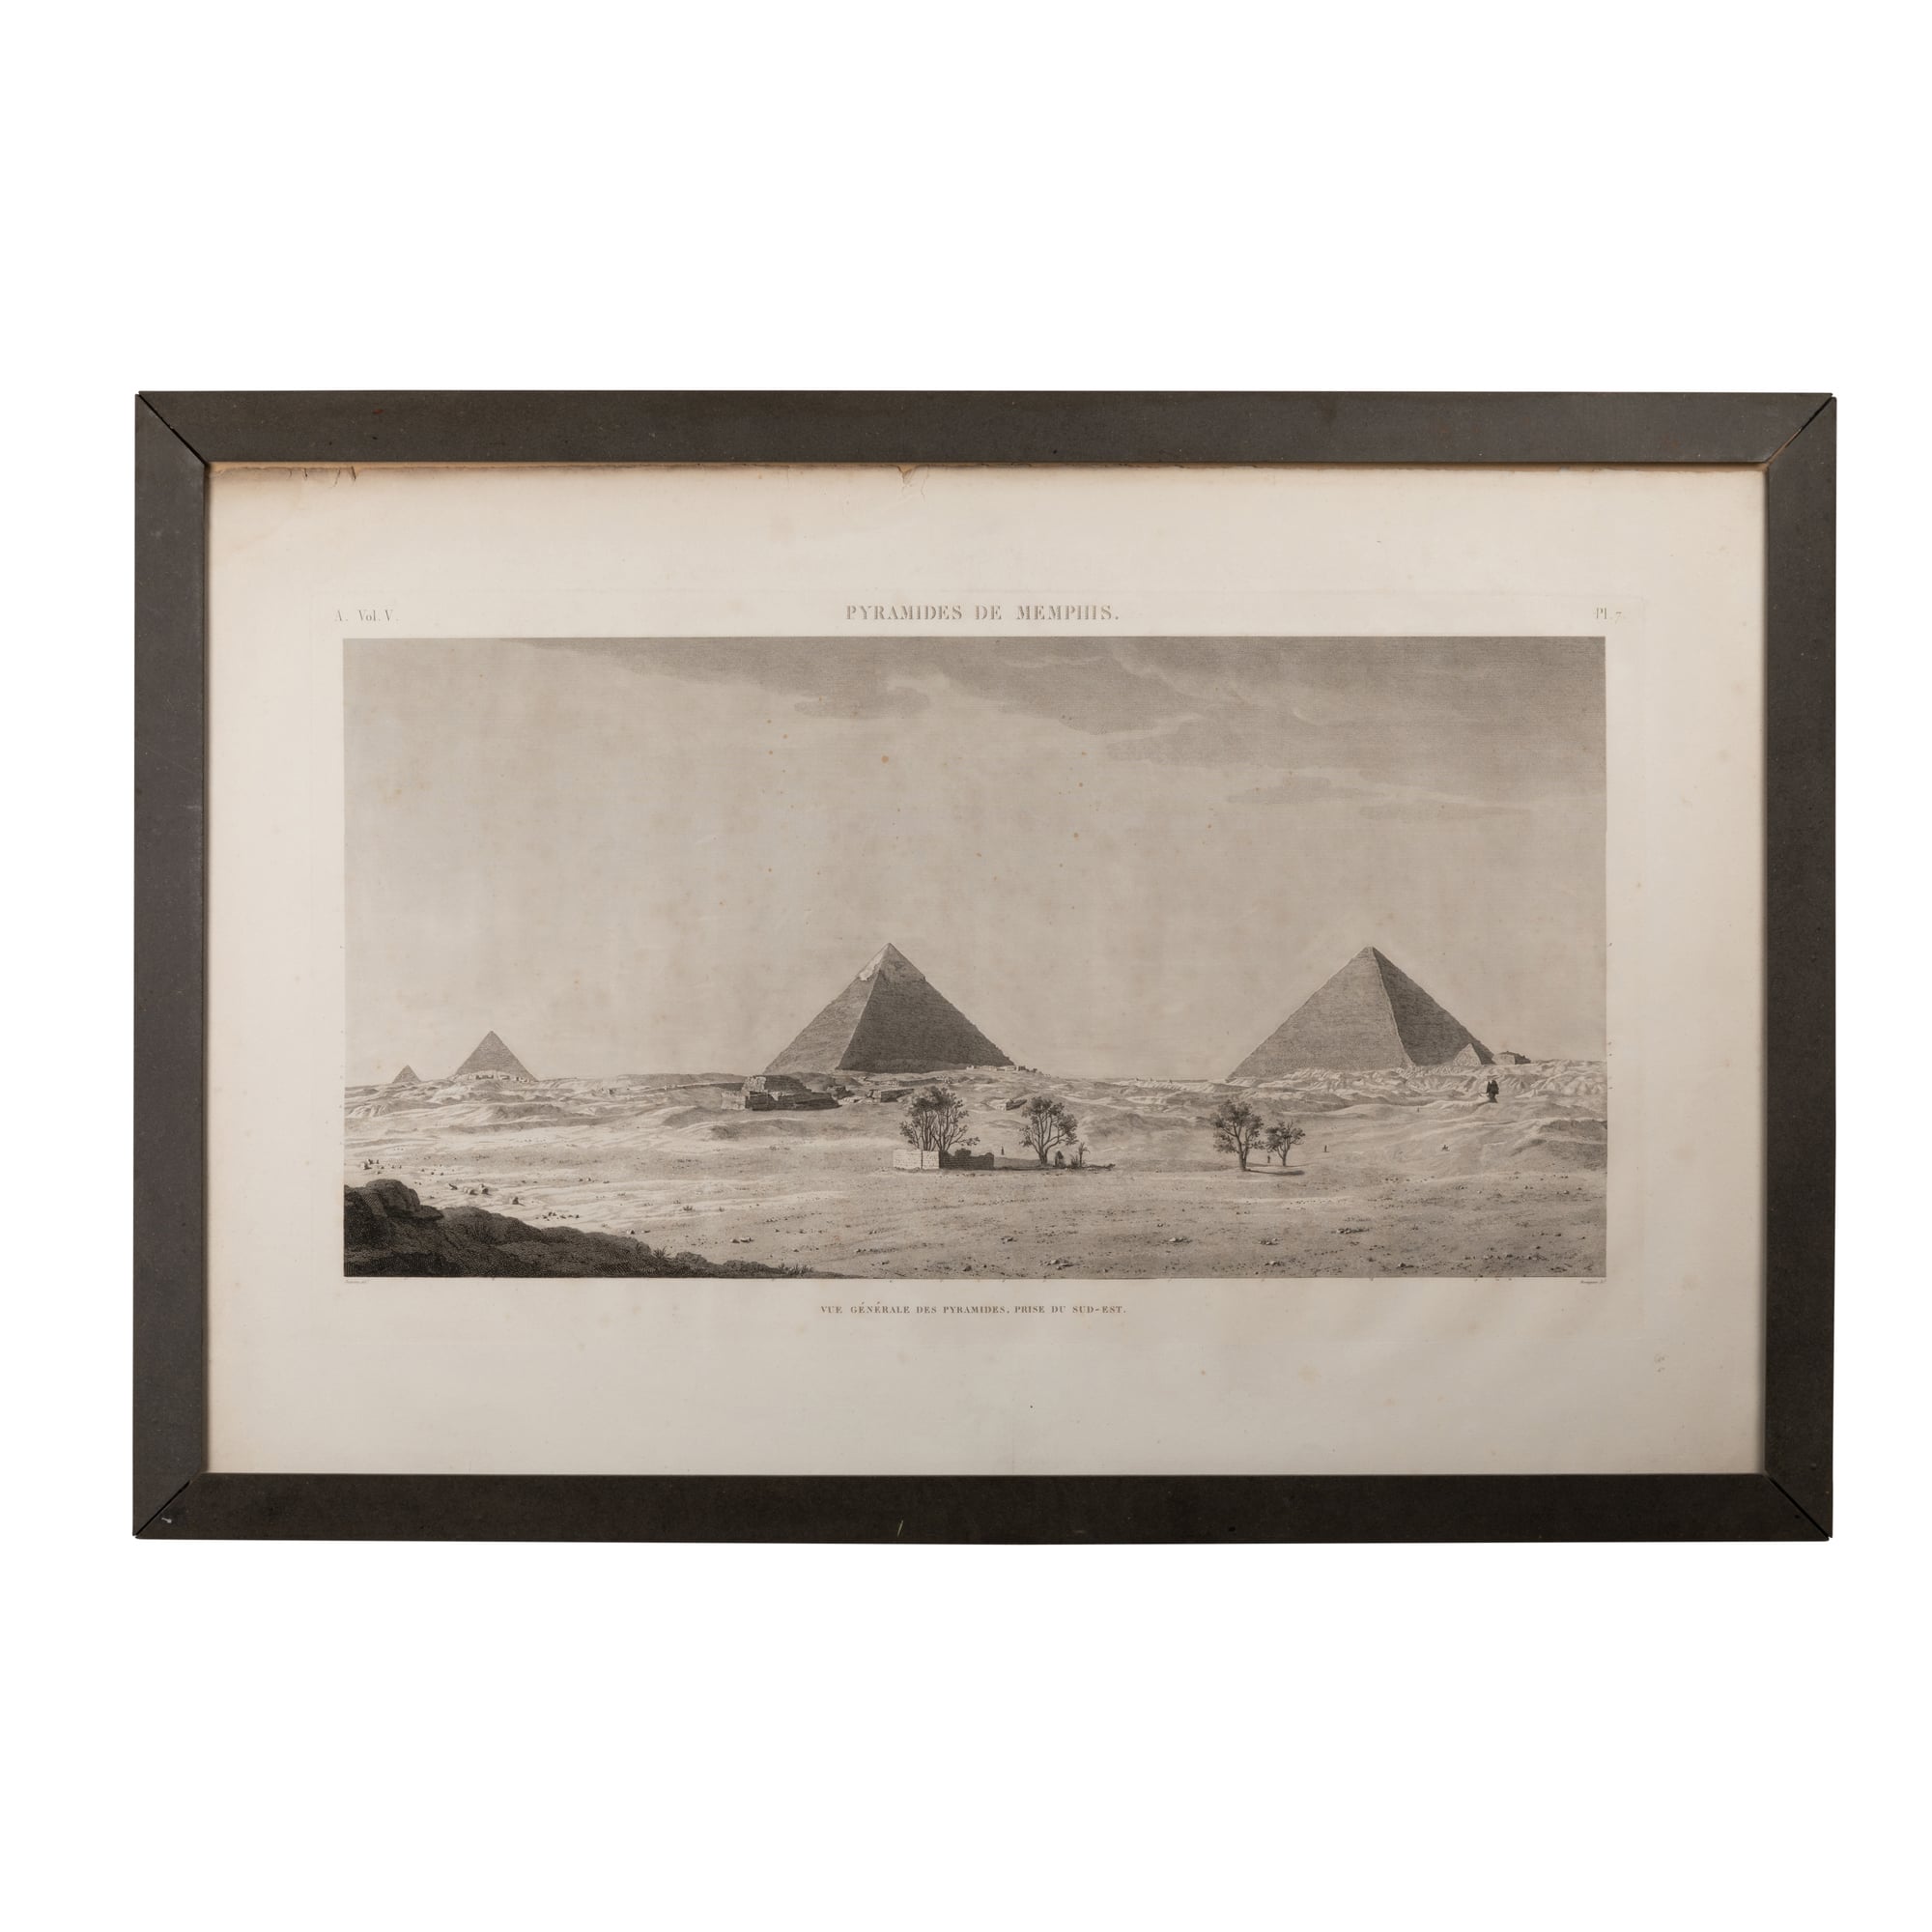 Gravure des pyramides de Memphis issue de Description de l’Égypte, 1809 - 1822.